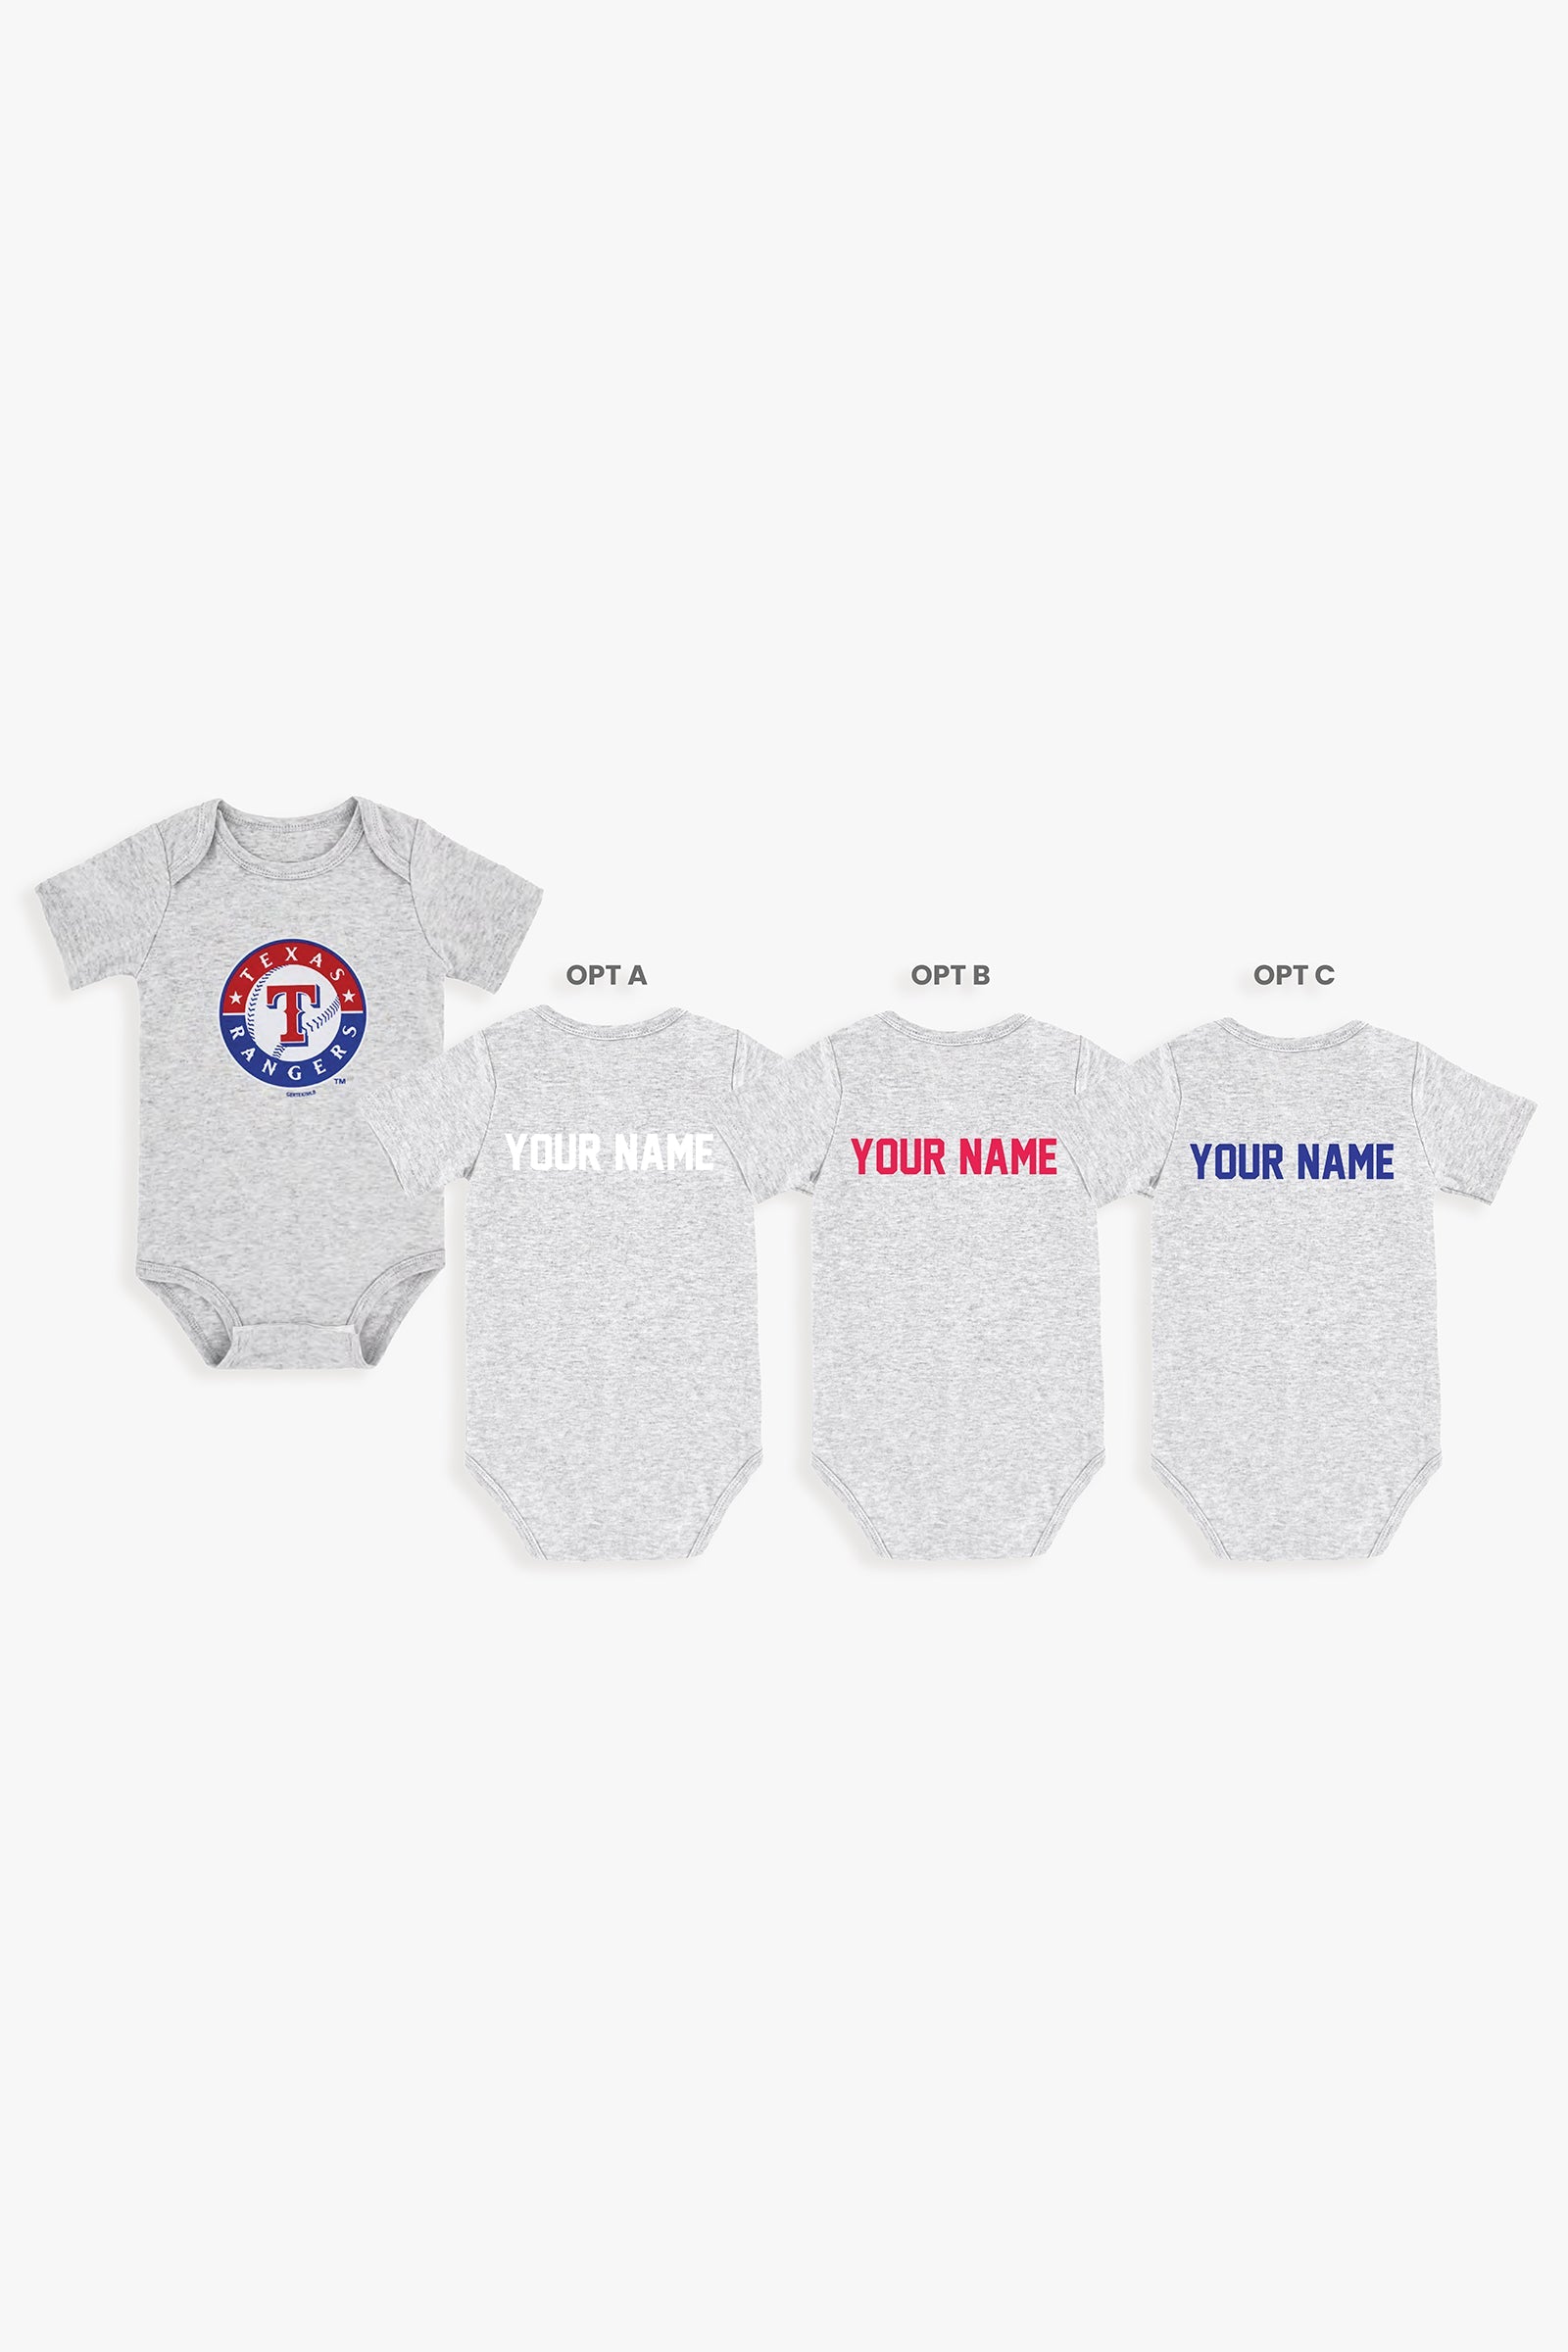 Gertex Customizable MLB Baby Onesie Bodysuit in Grey (3-6 Months)